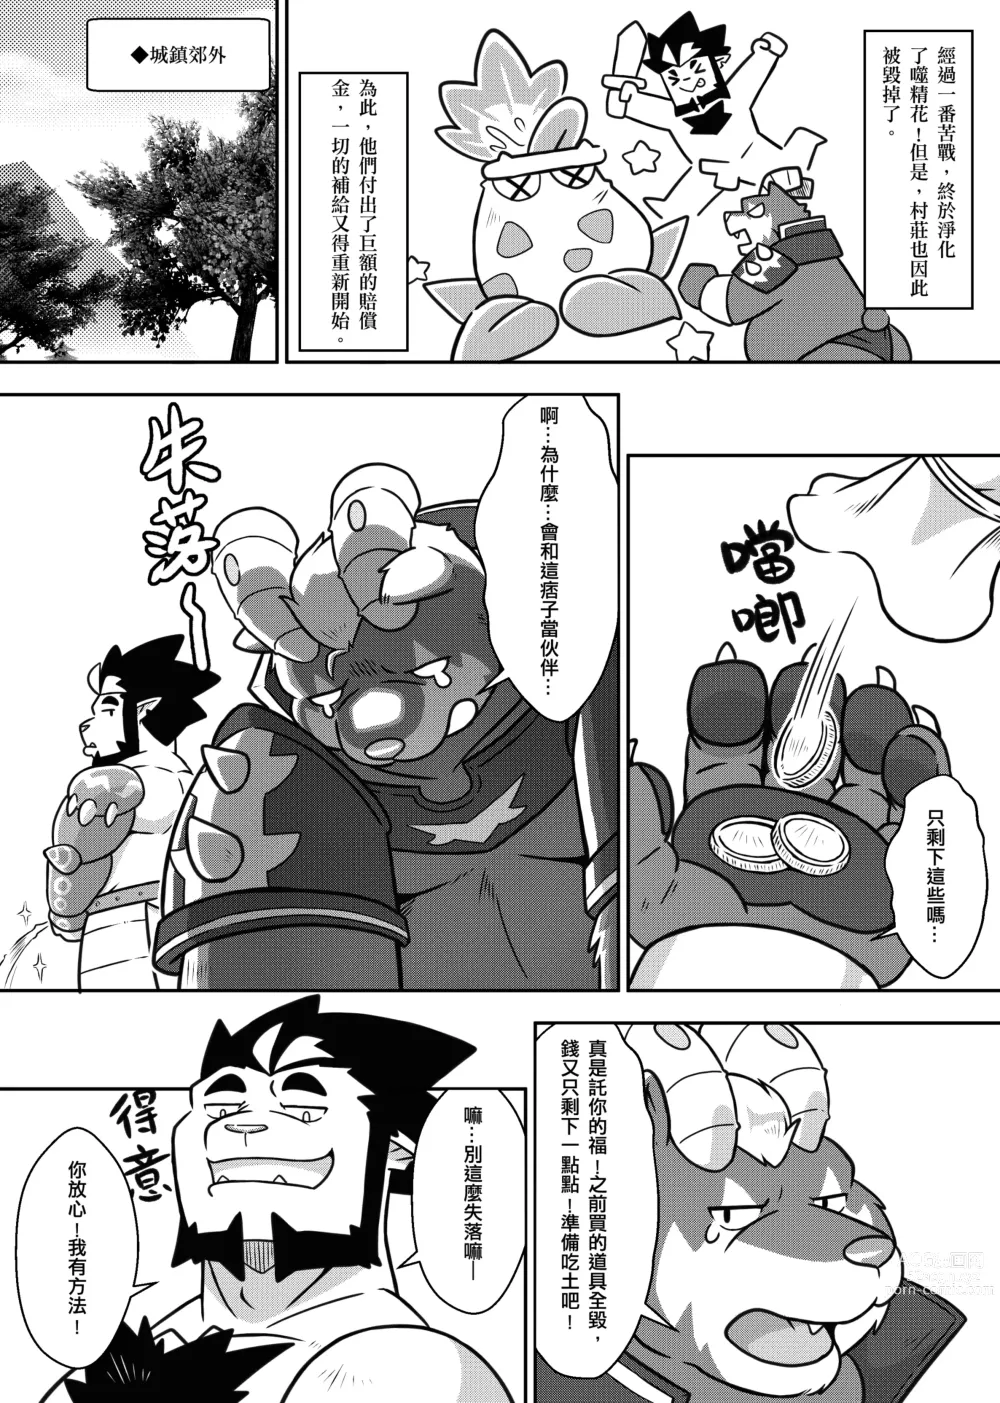 Page 3 of doujinshi 勇者的大小只有魔王塞得下2